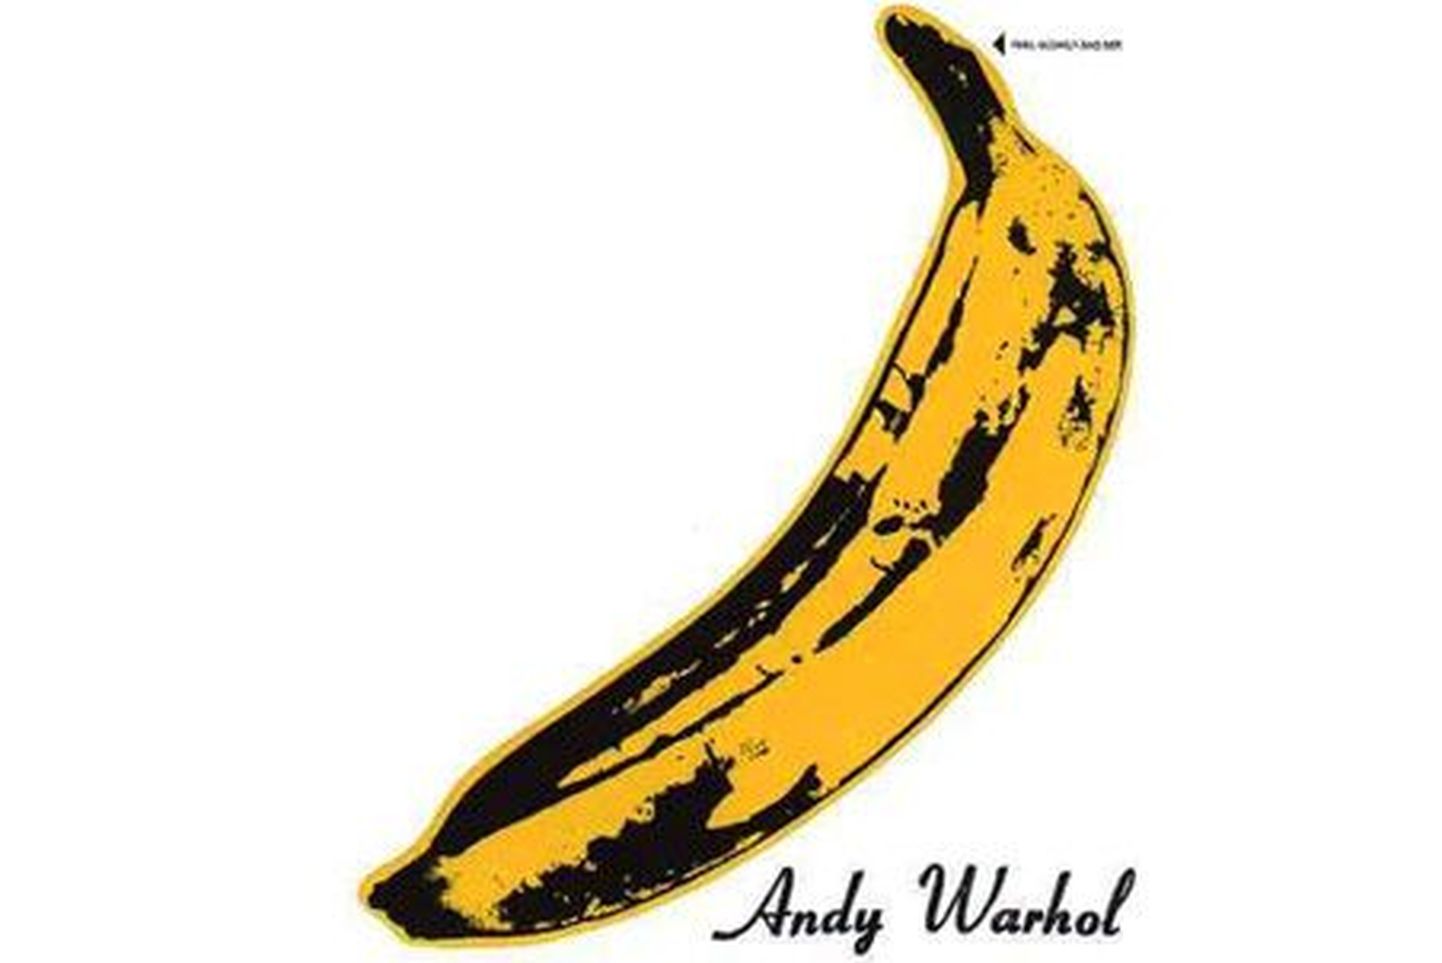 Знаменитая обложка дебютного альбома The Velvet Underground с бананом Энди Уорхолла